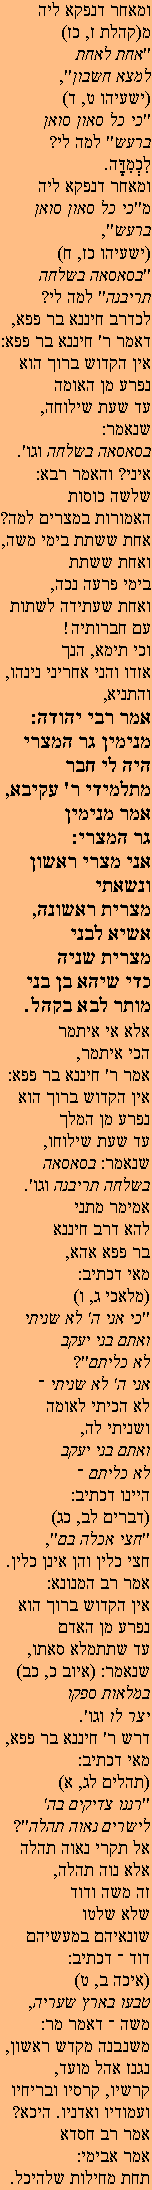 Ghemara 9a2